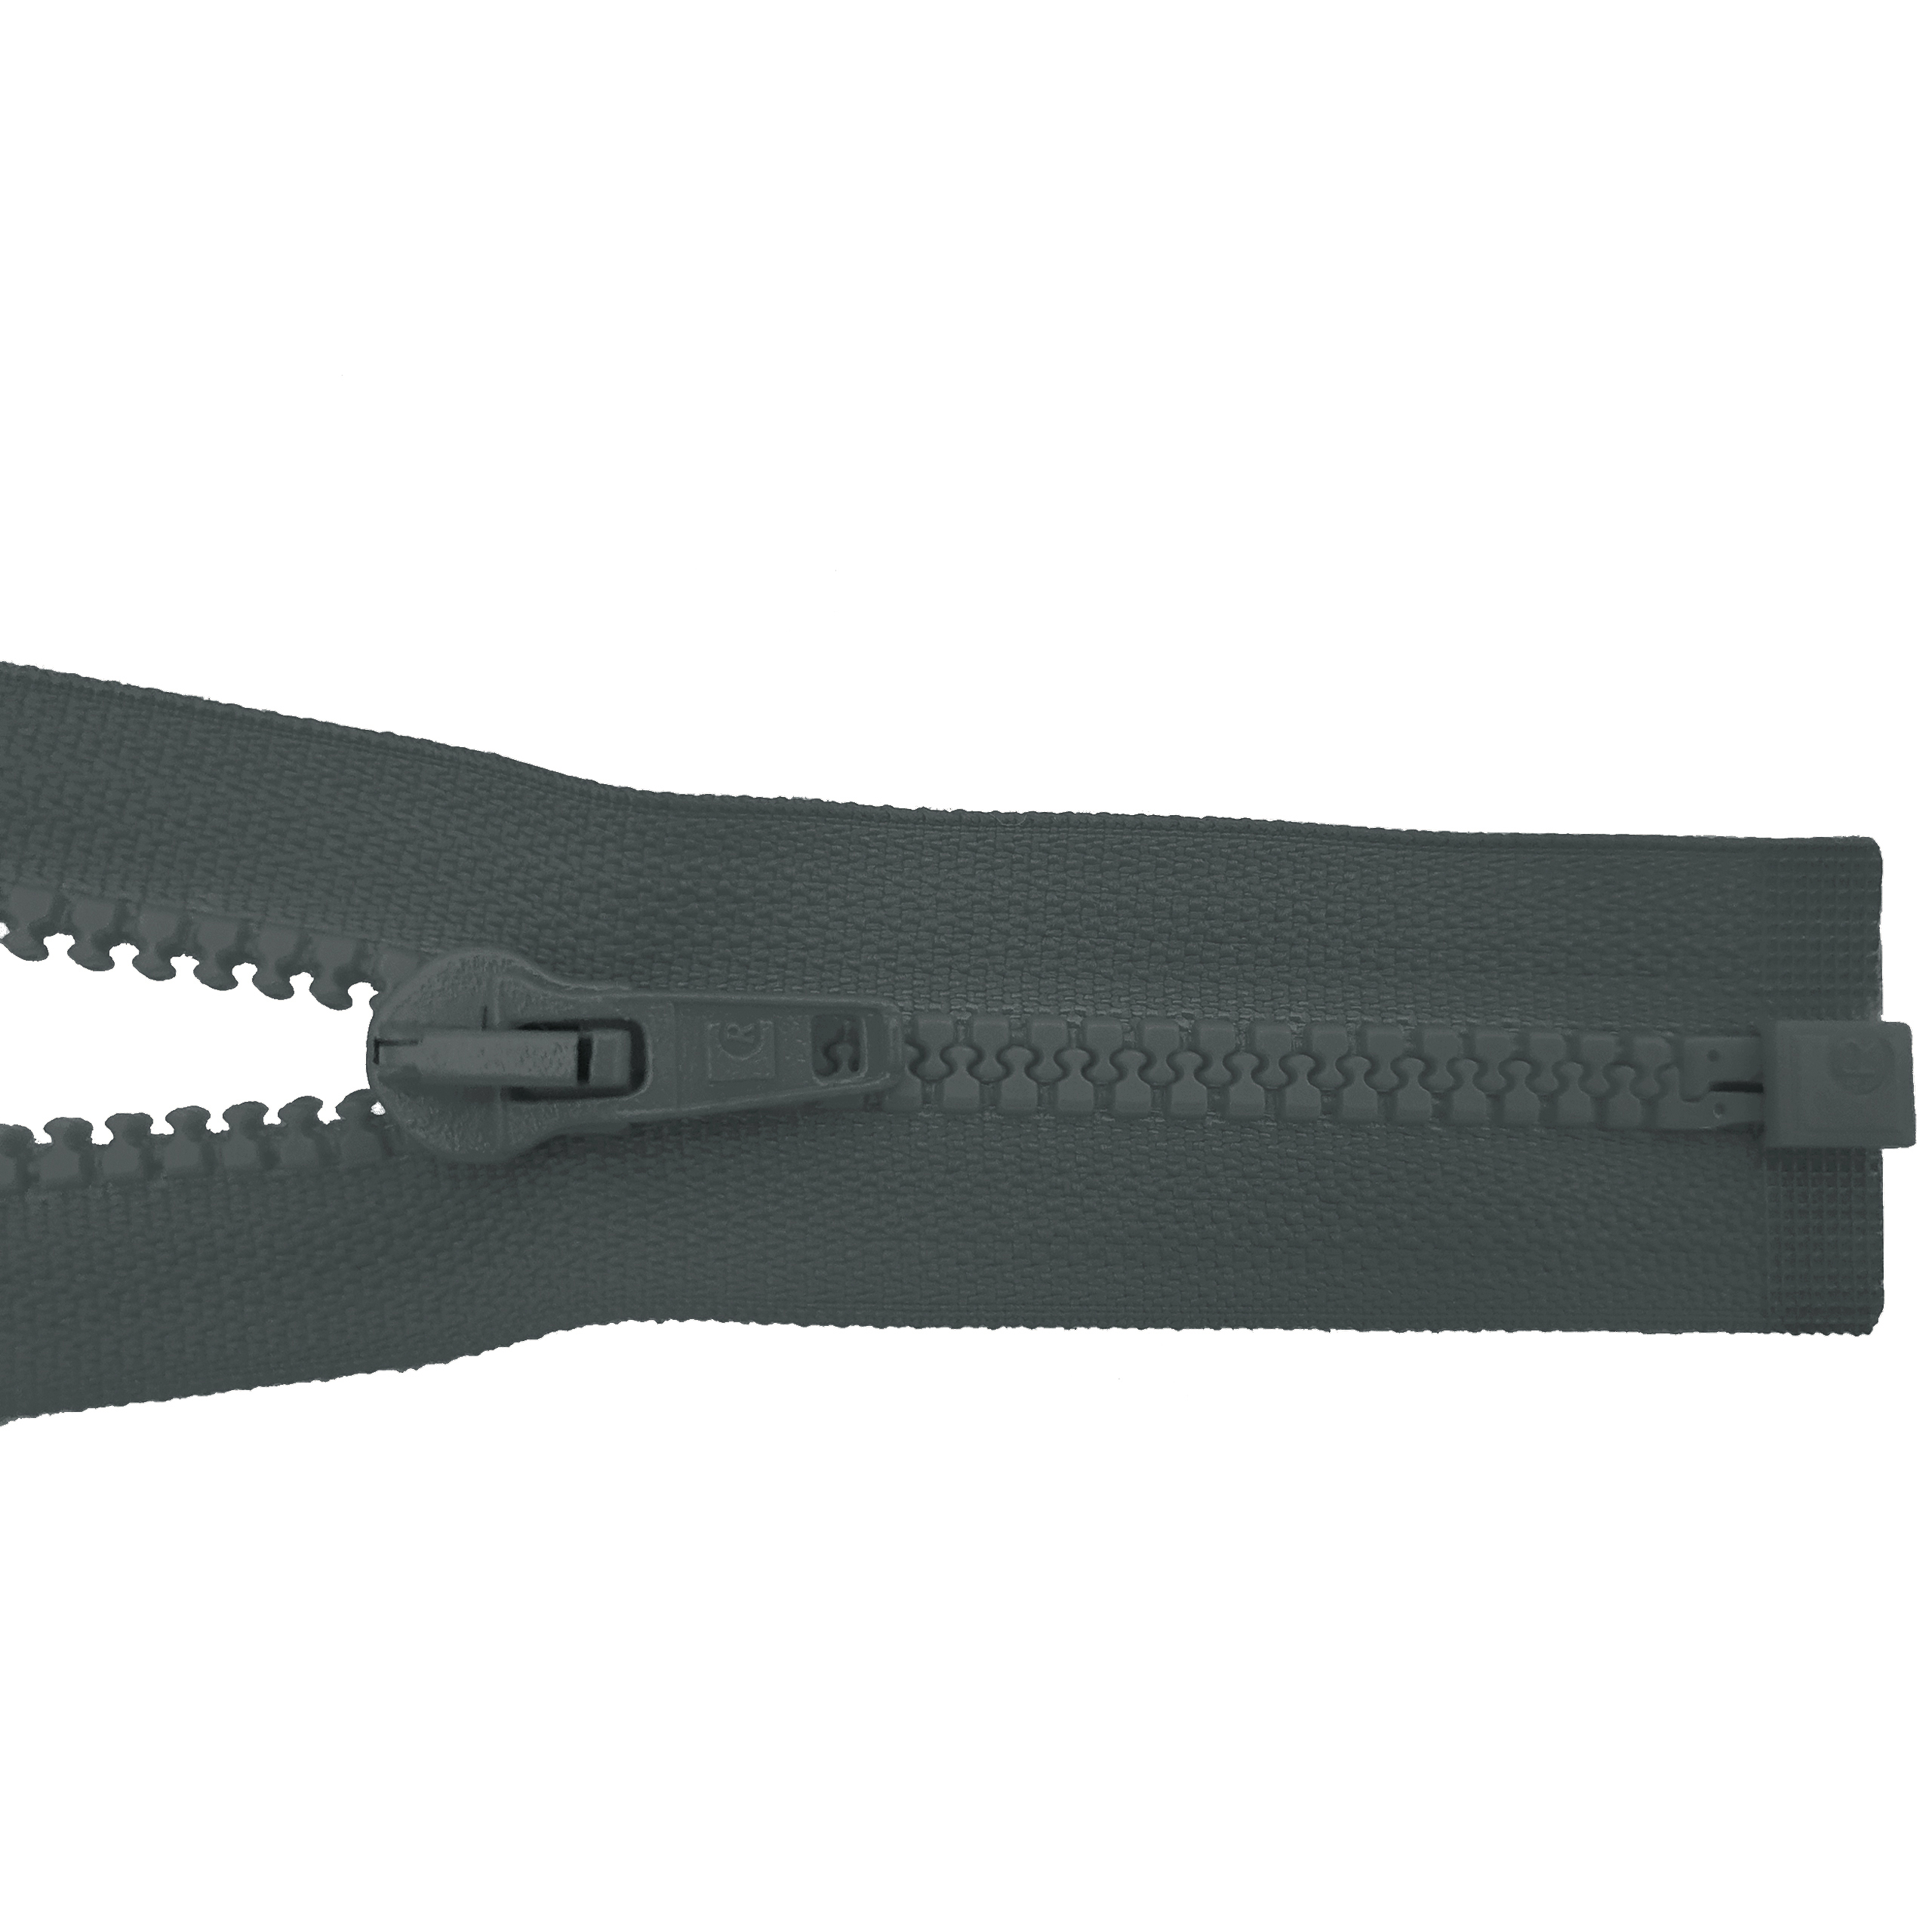 Reißverschluss 80cm, teilbar, Kstoff Zähne breit, graphitgrau, hochwertiger Marken-Reißverschluss von Rubi/Barcelona